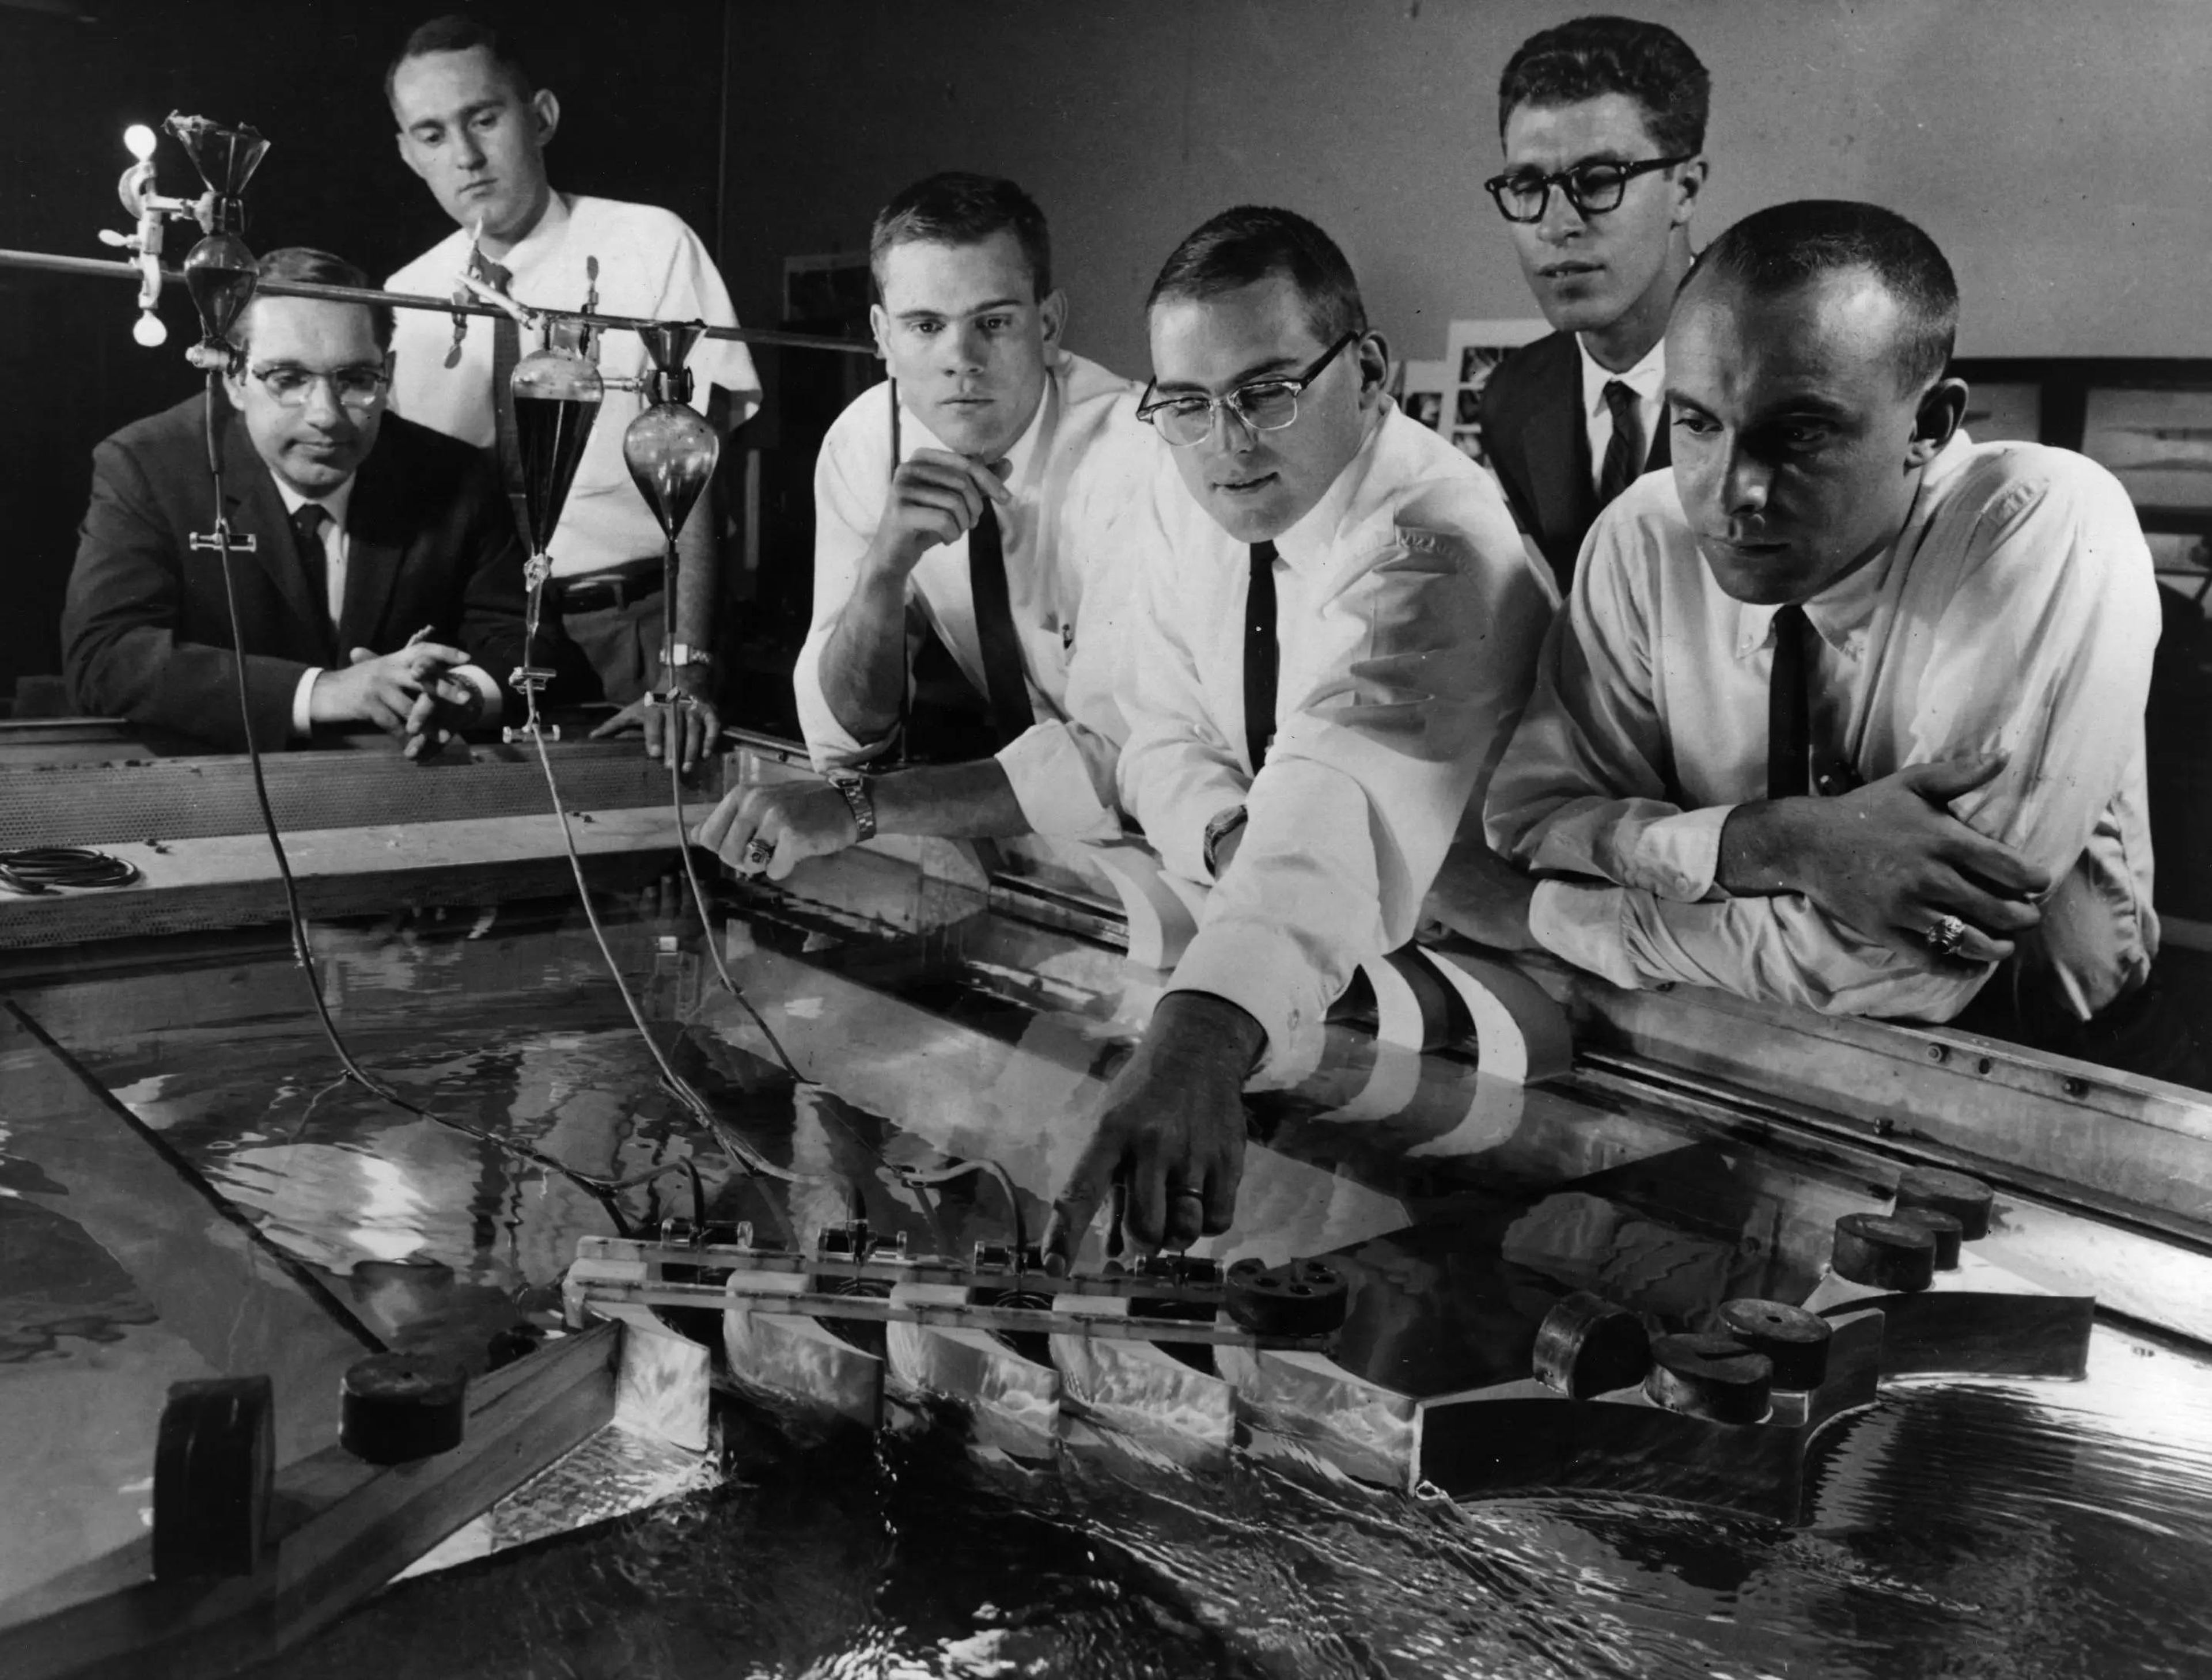 Investigadores de GE en 1969. Por aquel entonces, los profesionales disfrutaban de una seguridad laboral que hoy sería impensable.